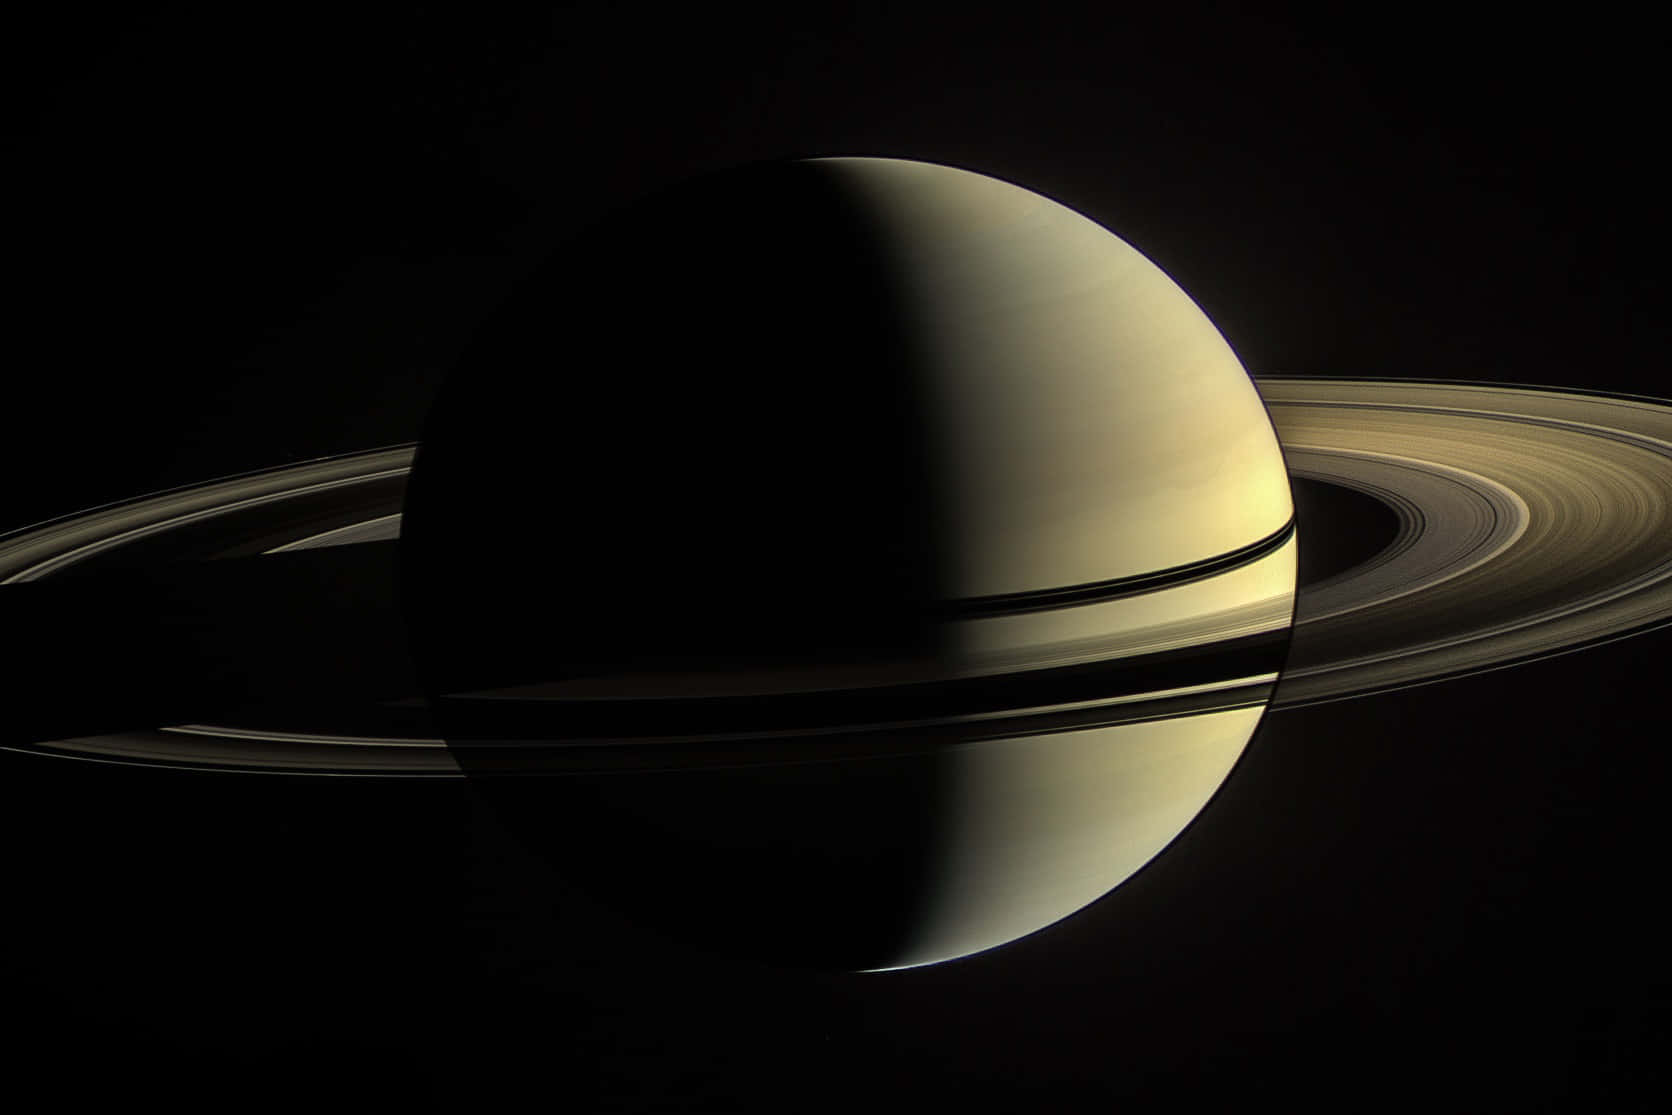 A captivating closeup image of Saturn